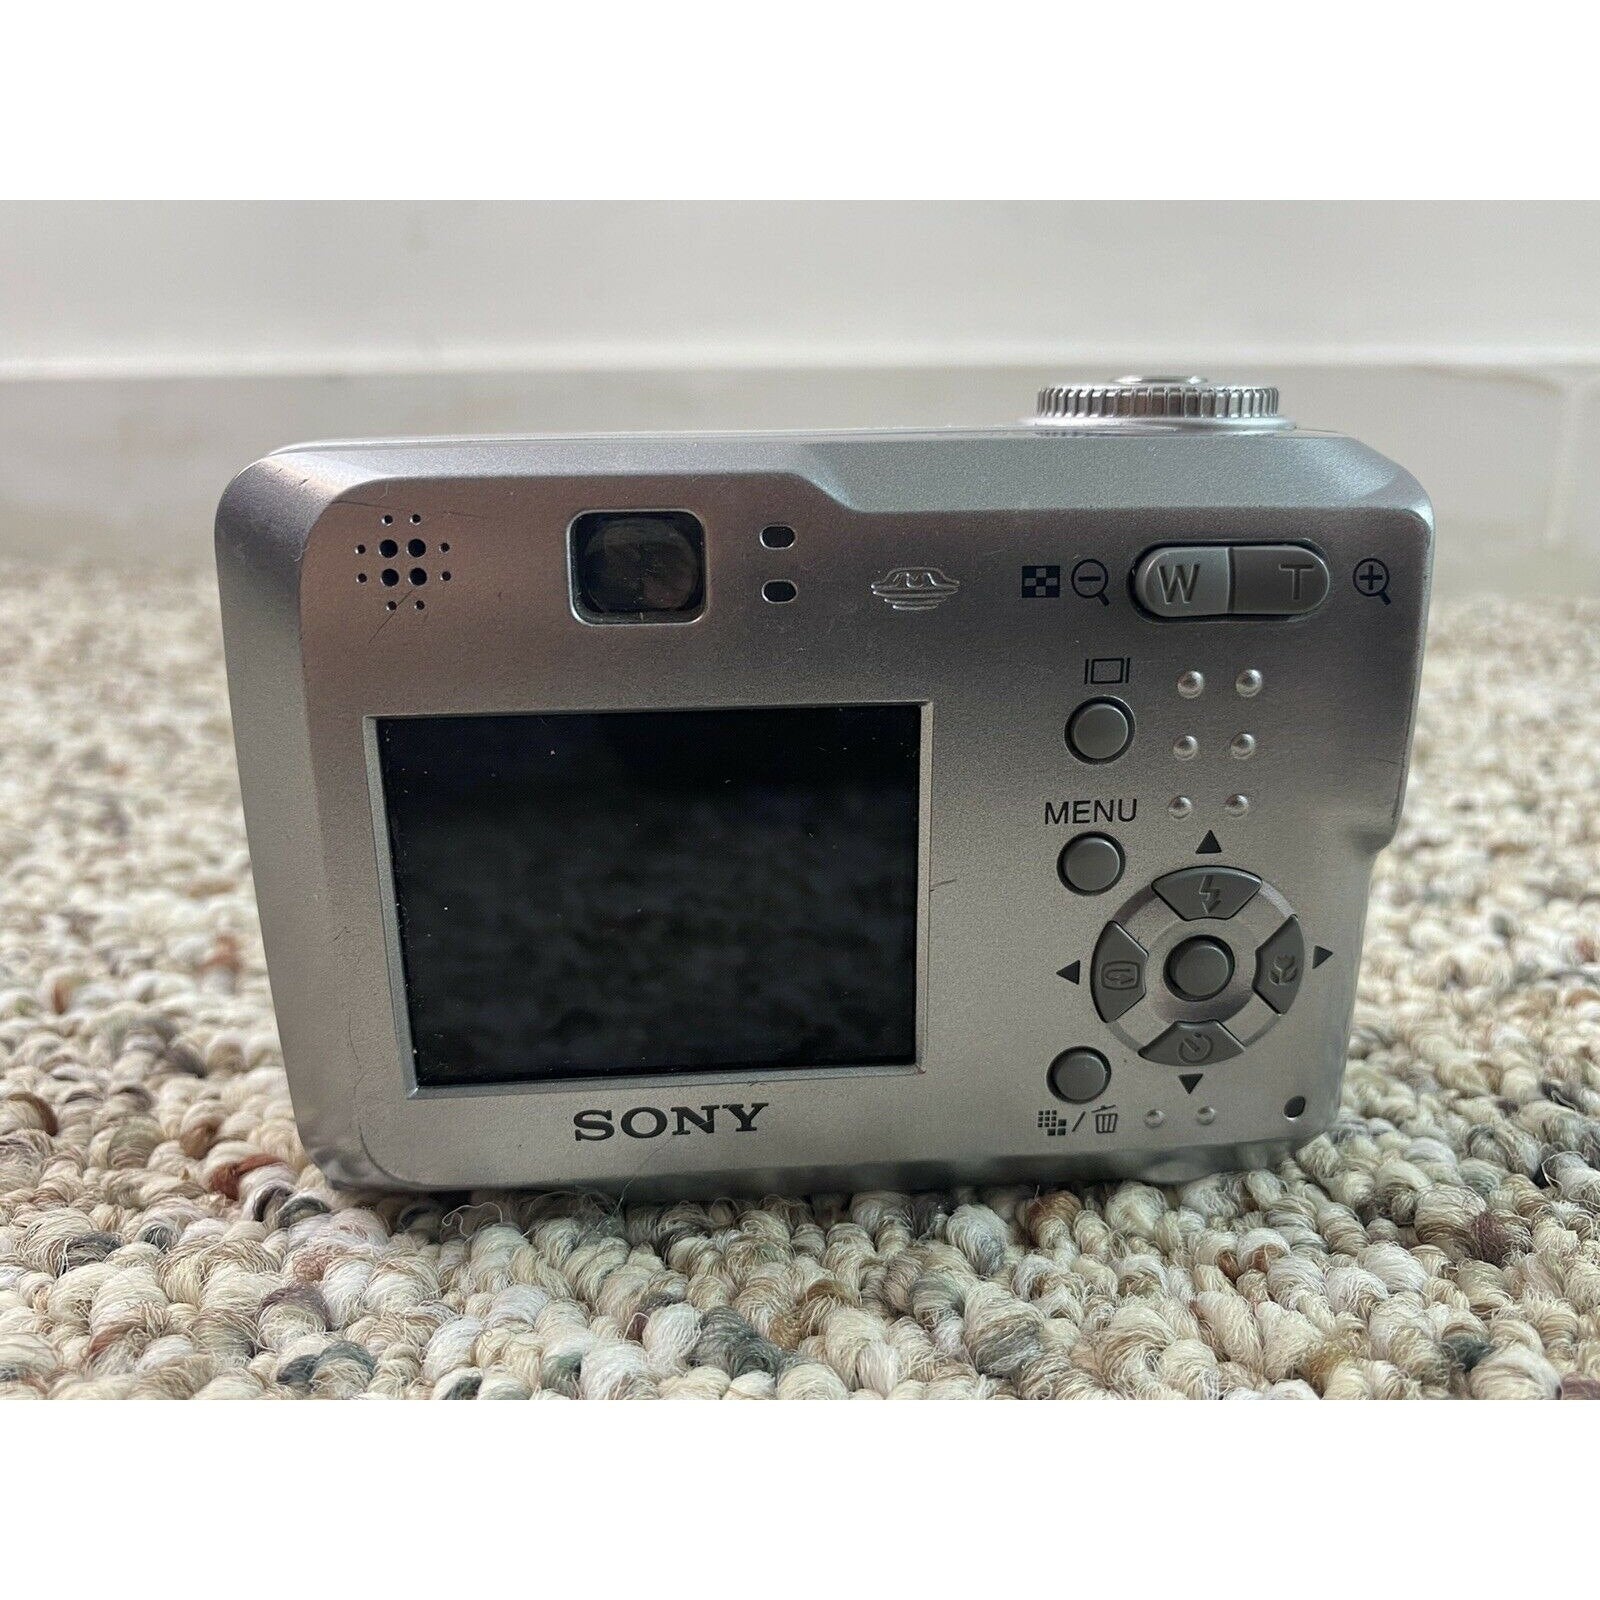 Sony Cyber-shot DSC-S60 4.1MP Digital Camera - Silver